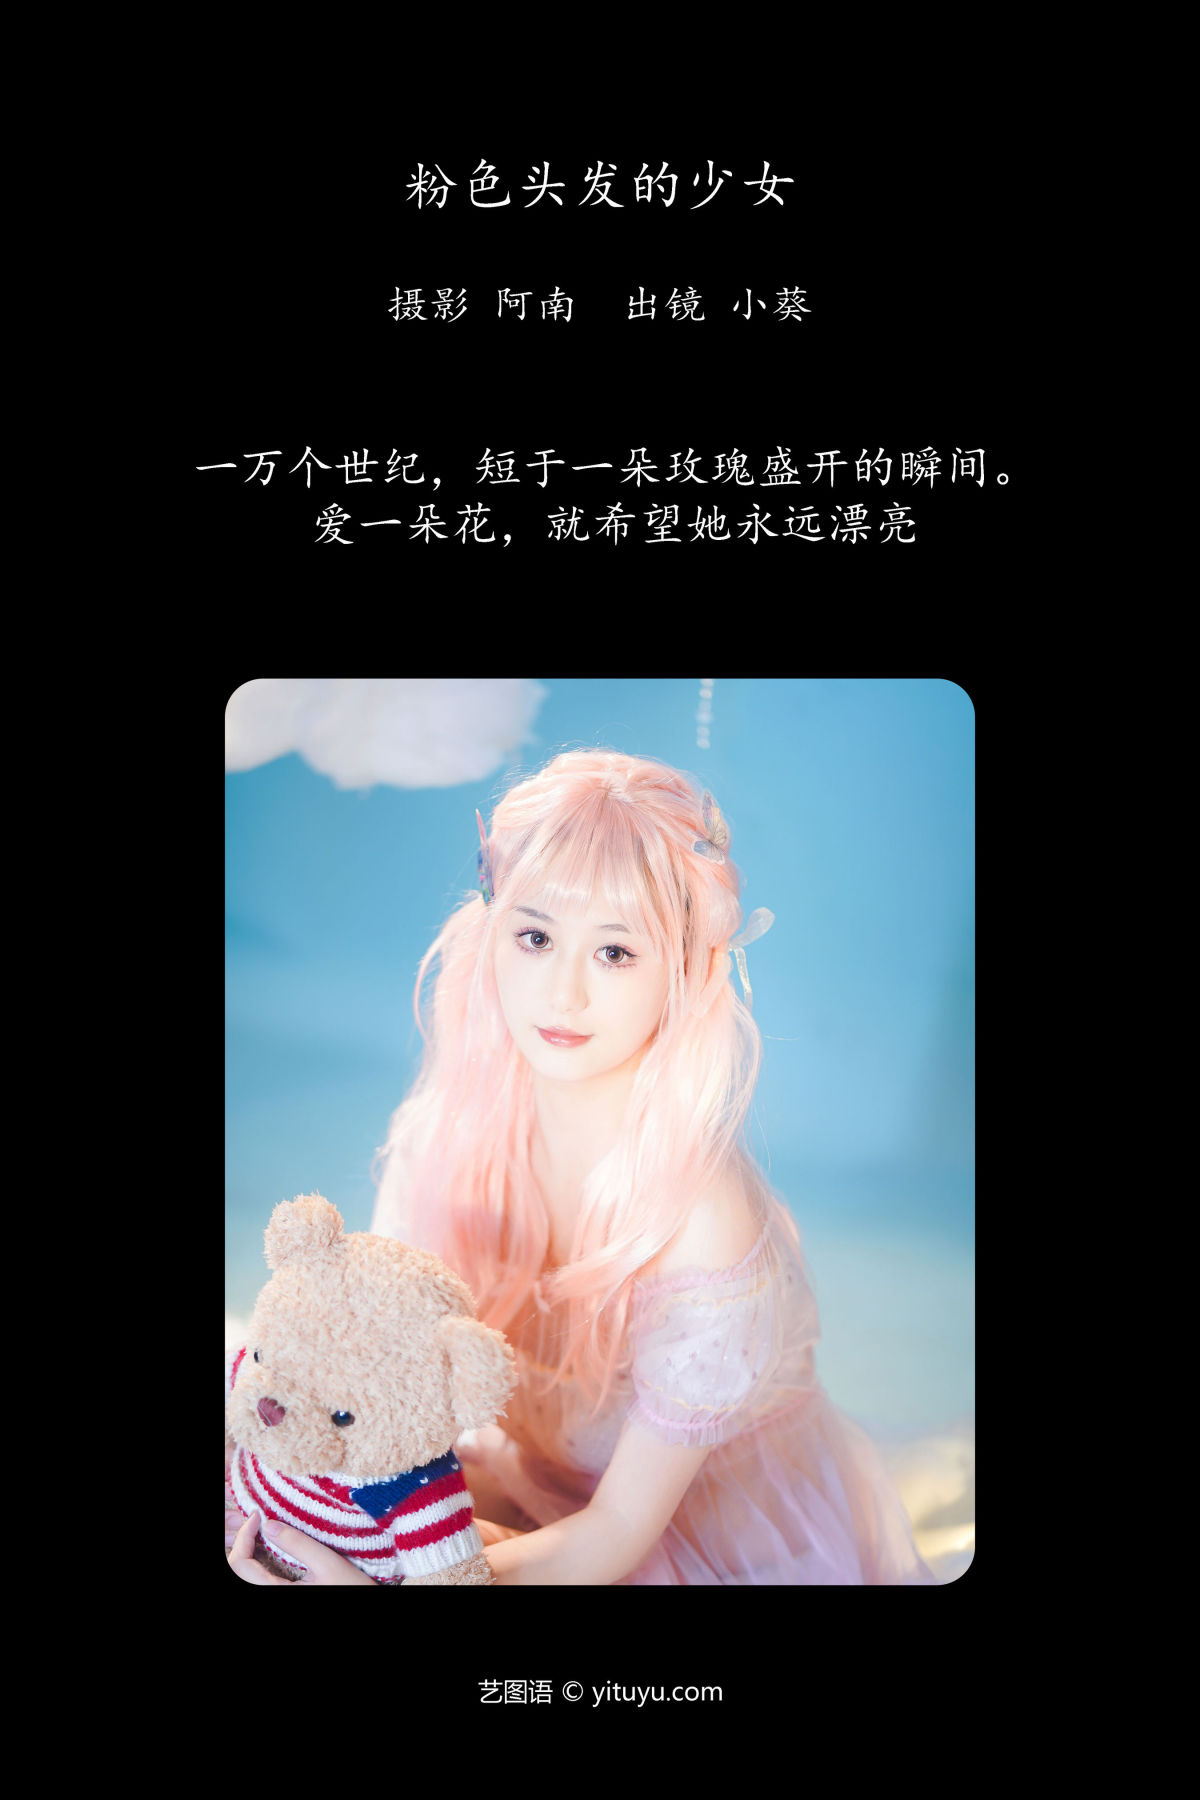 阿南_小葵《粉色头发的少女》美图作品图片2